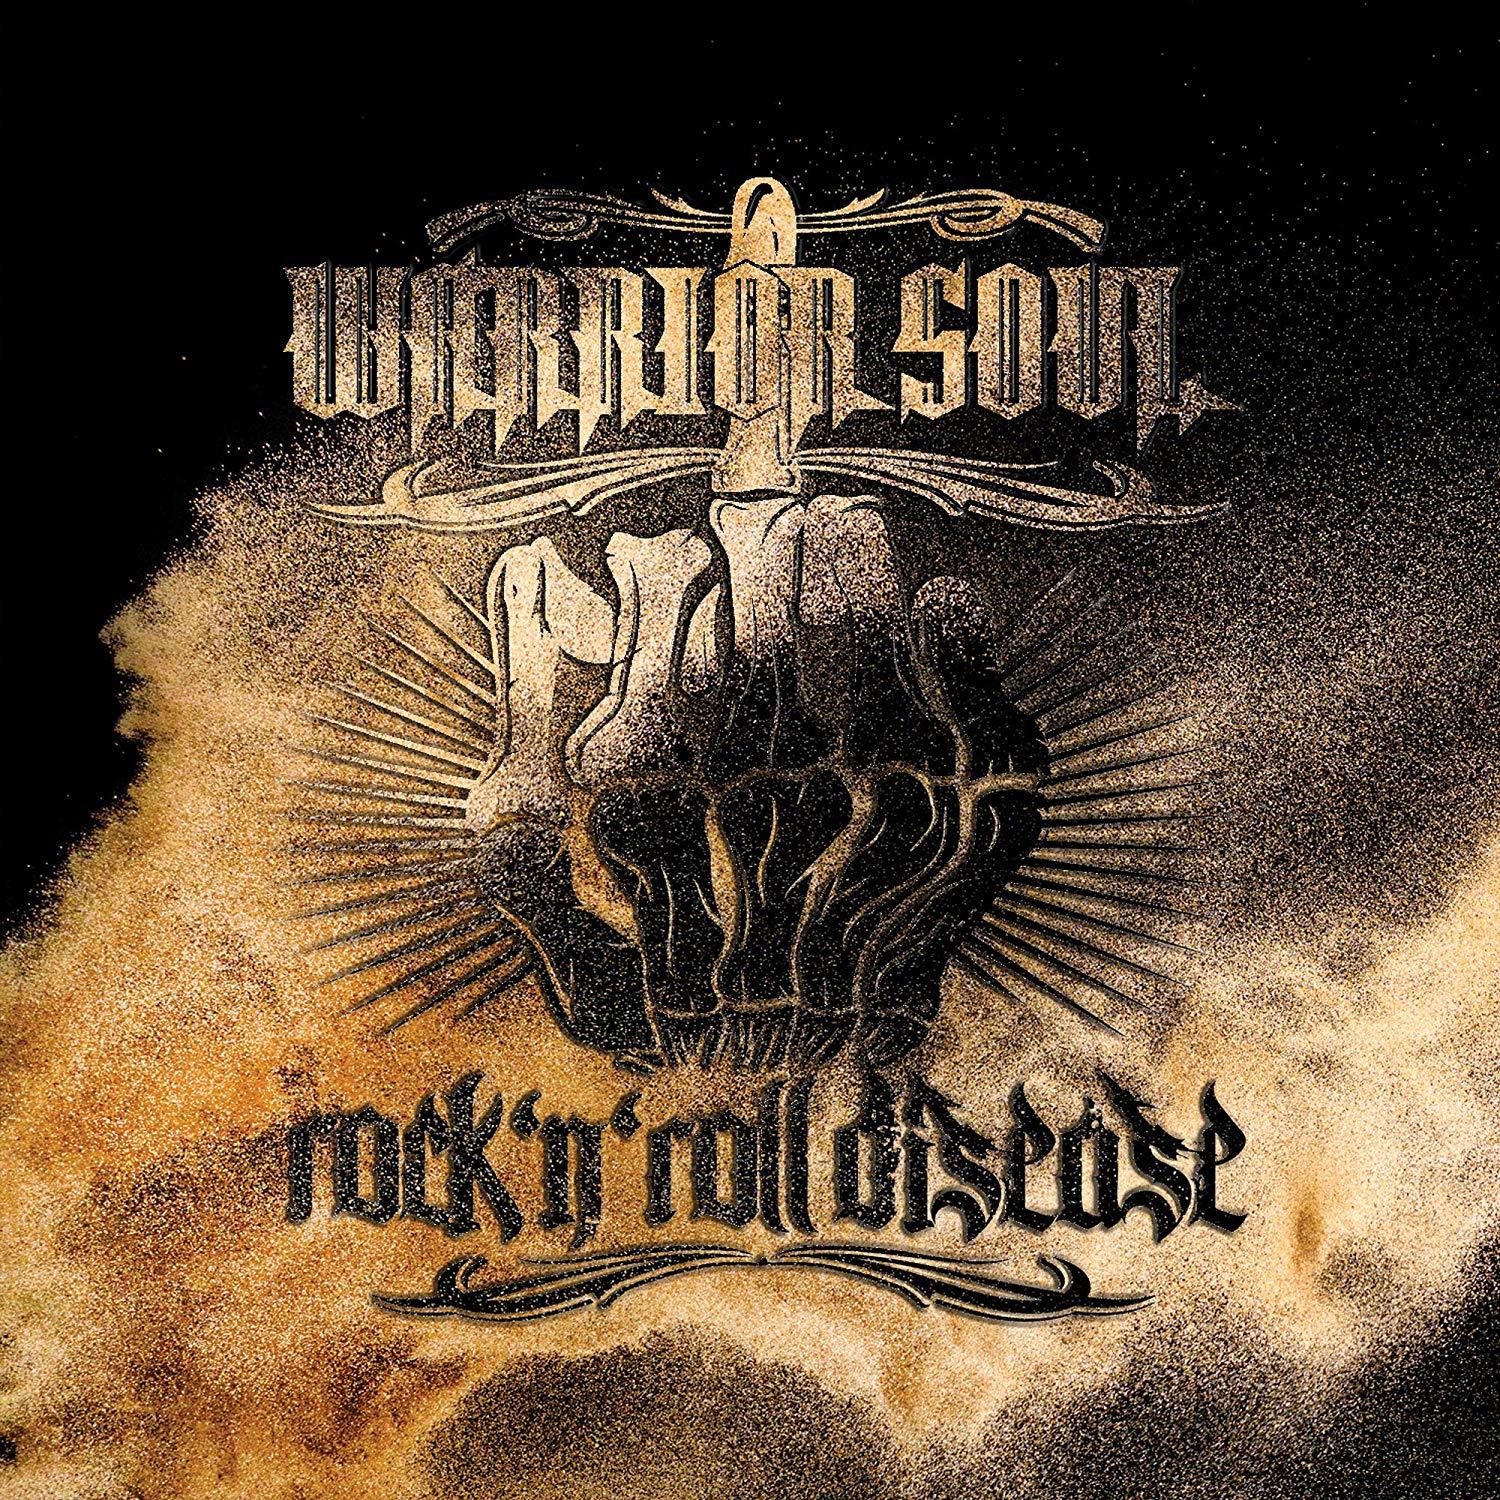 Warrior Soul - Rock 'N' Roll Disease (2019, Hard Rock) - Download for ...